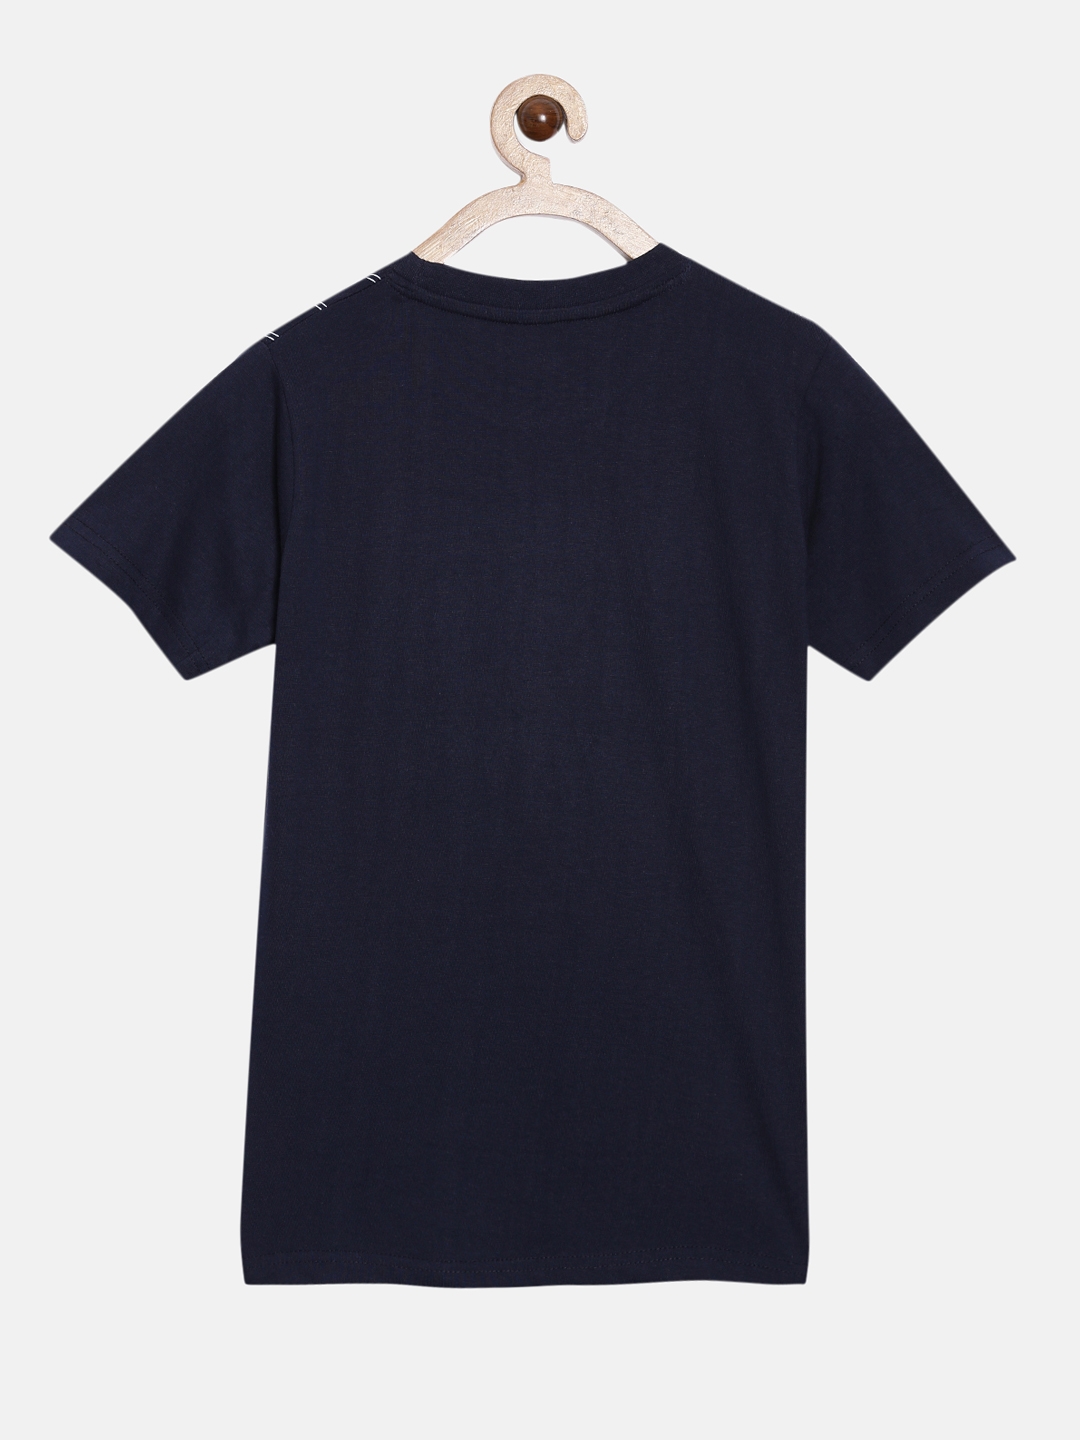 Peejas | Peejas 100% Cotton Boys  Printed Round Neck Short Sleeves Tshirts 3